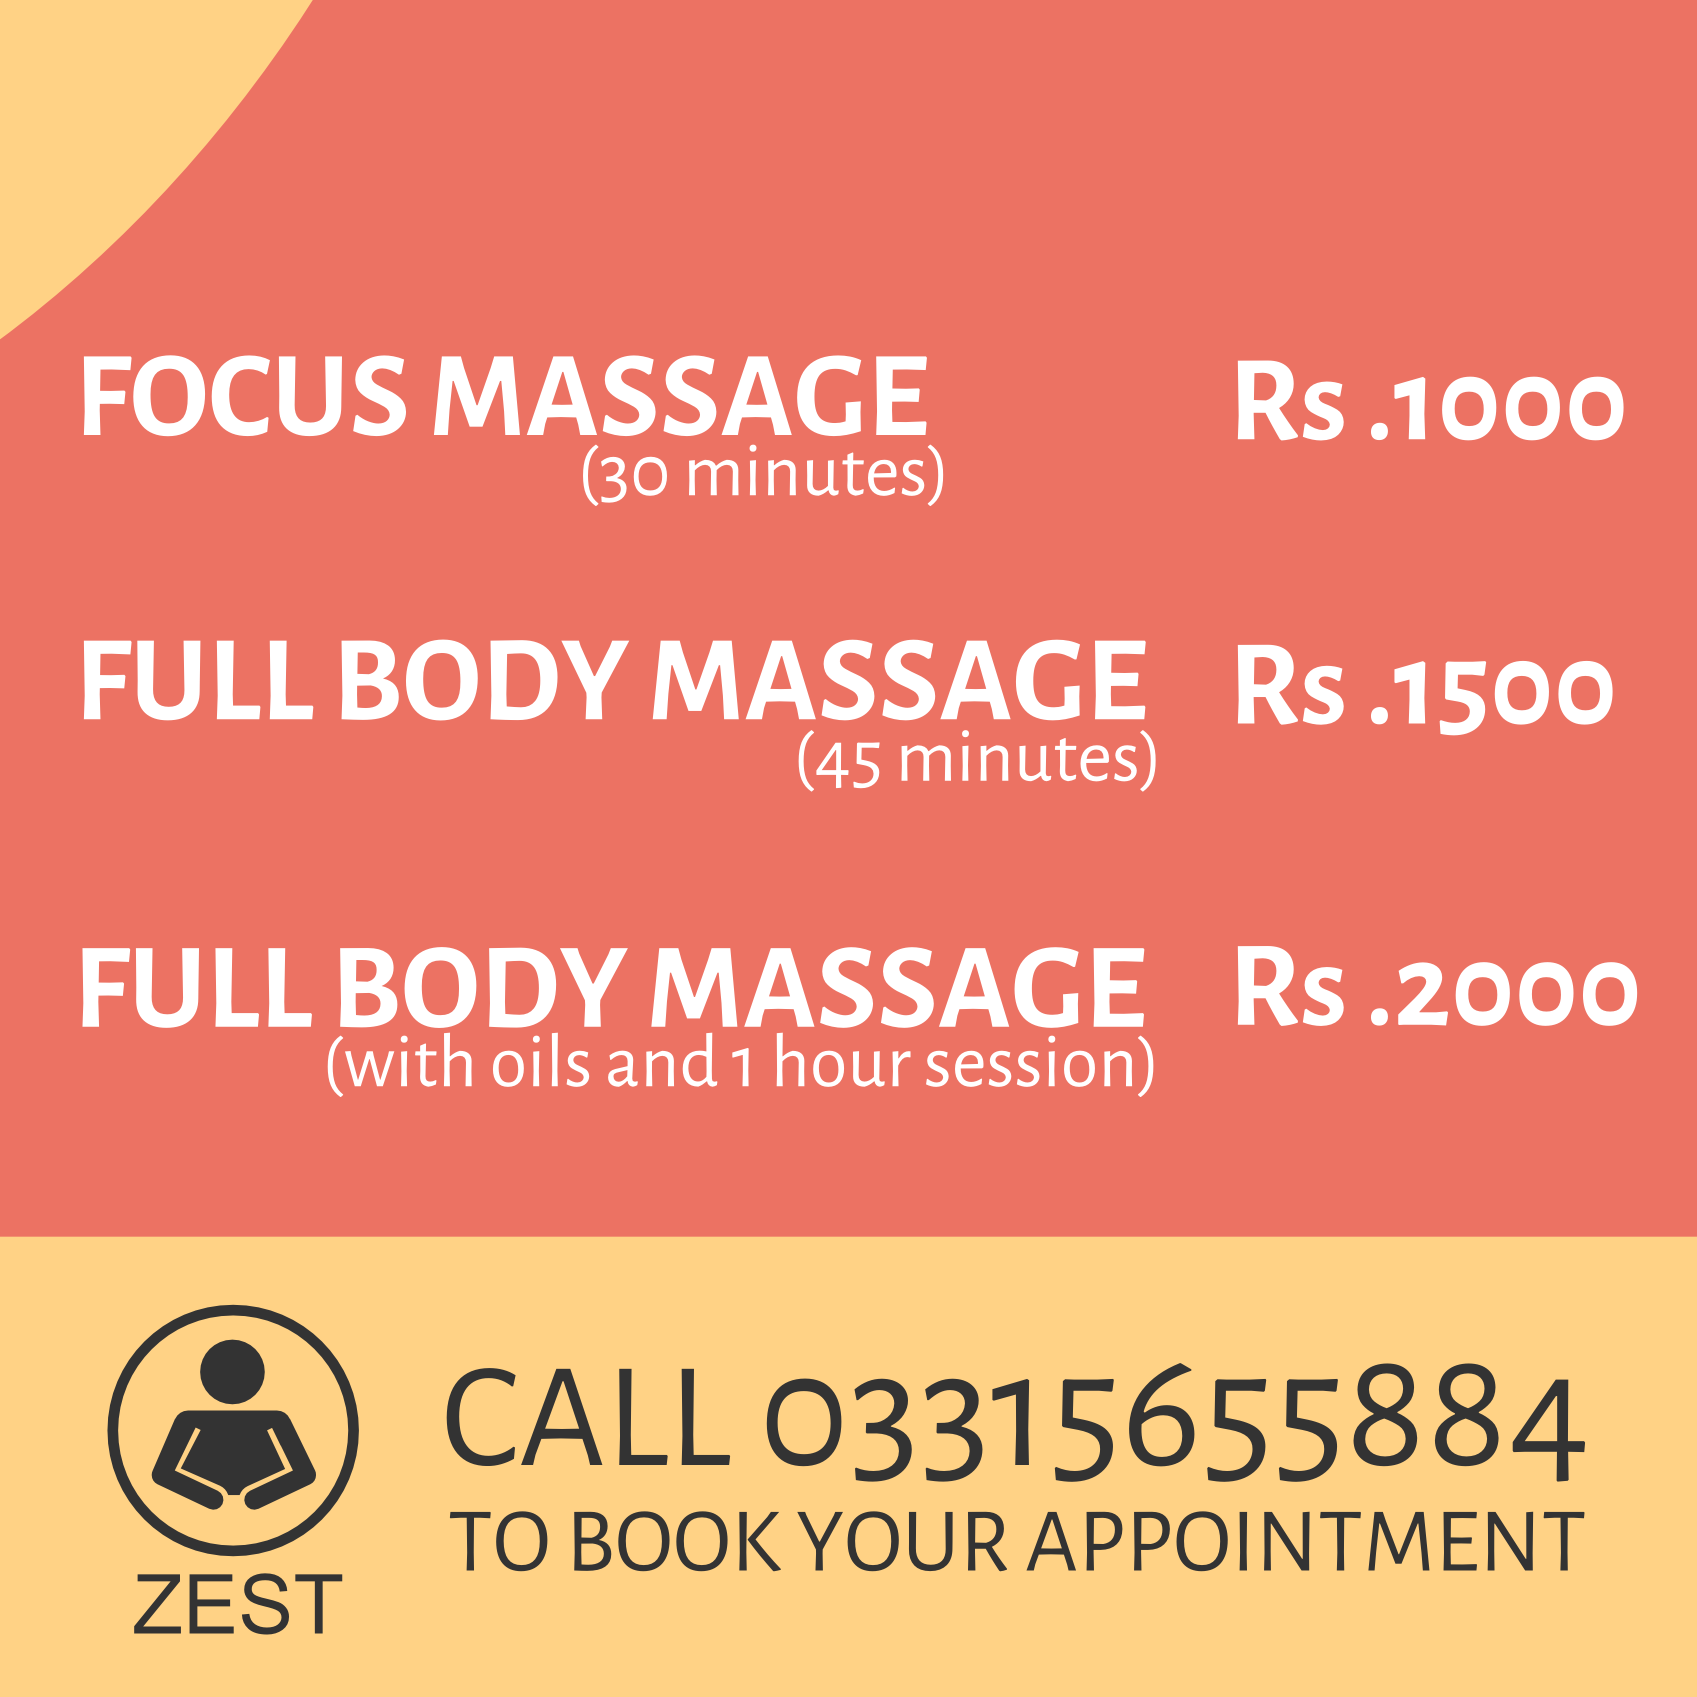 Zest Massage Price List